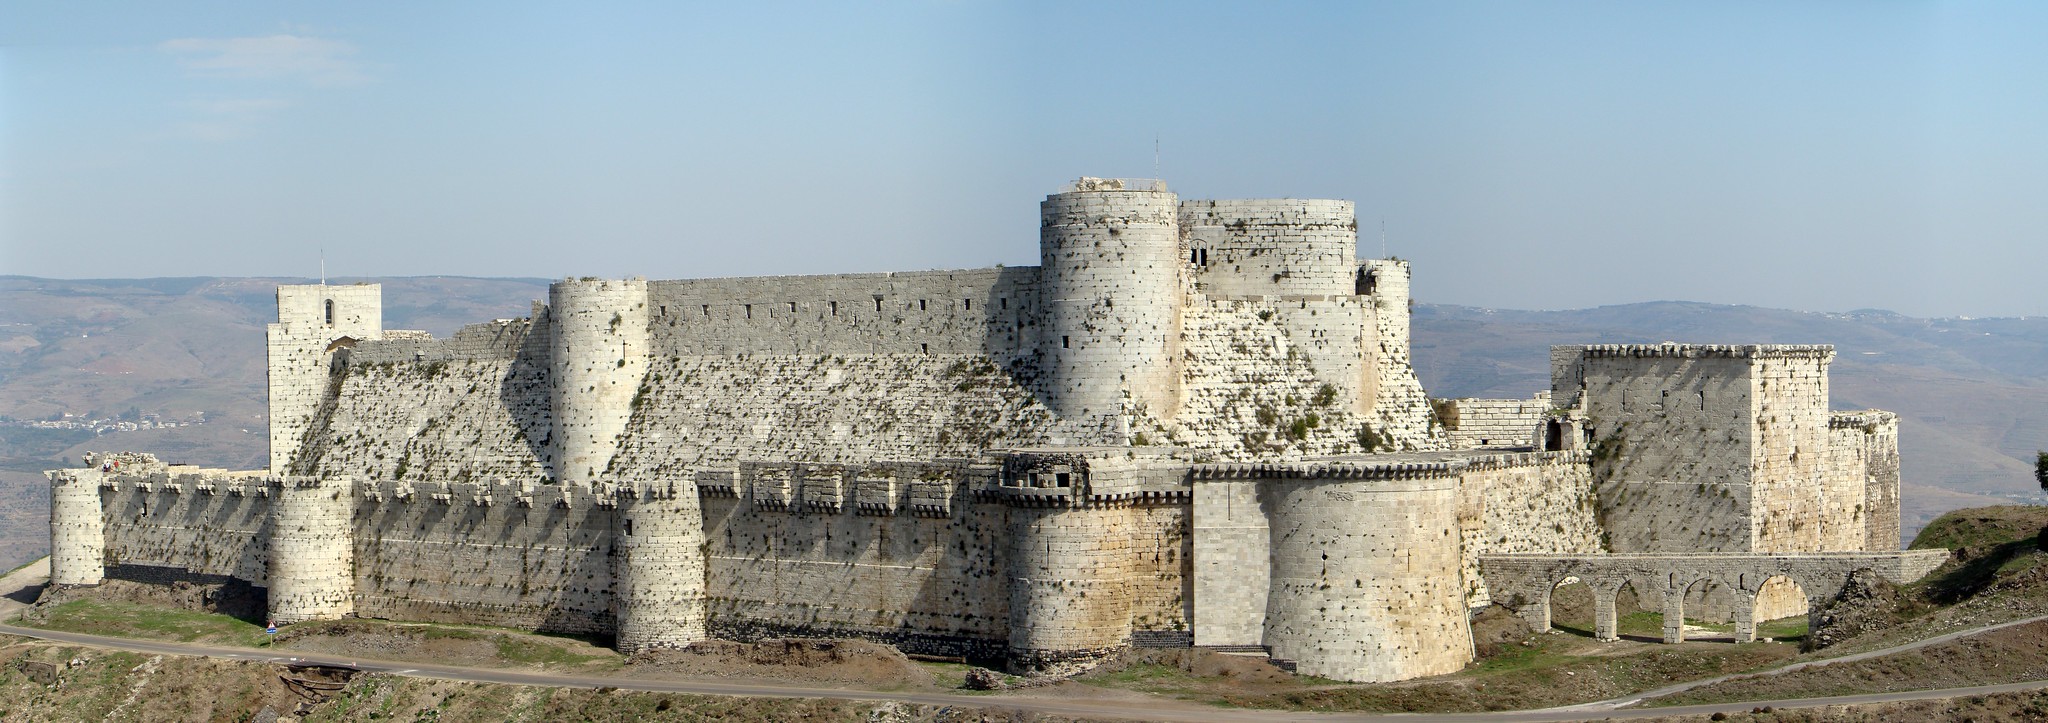 vistas del Castillo Crac de los Caballeros Siria